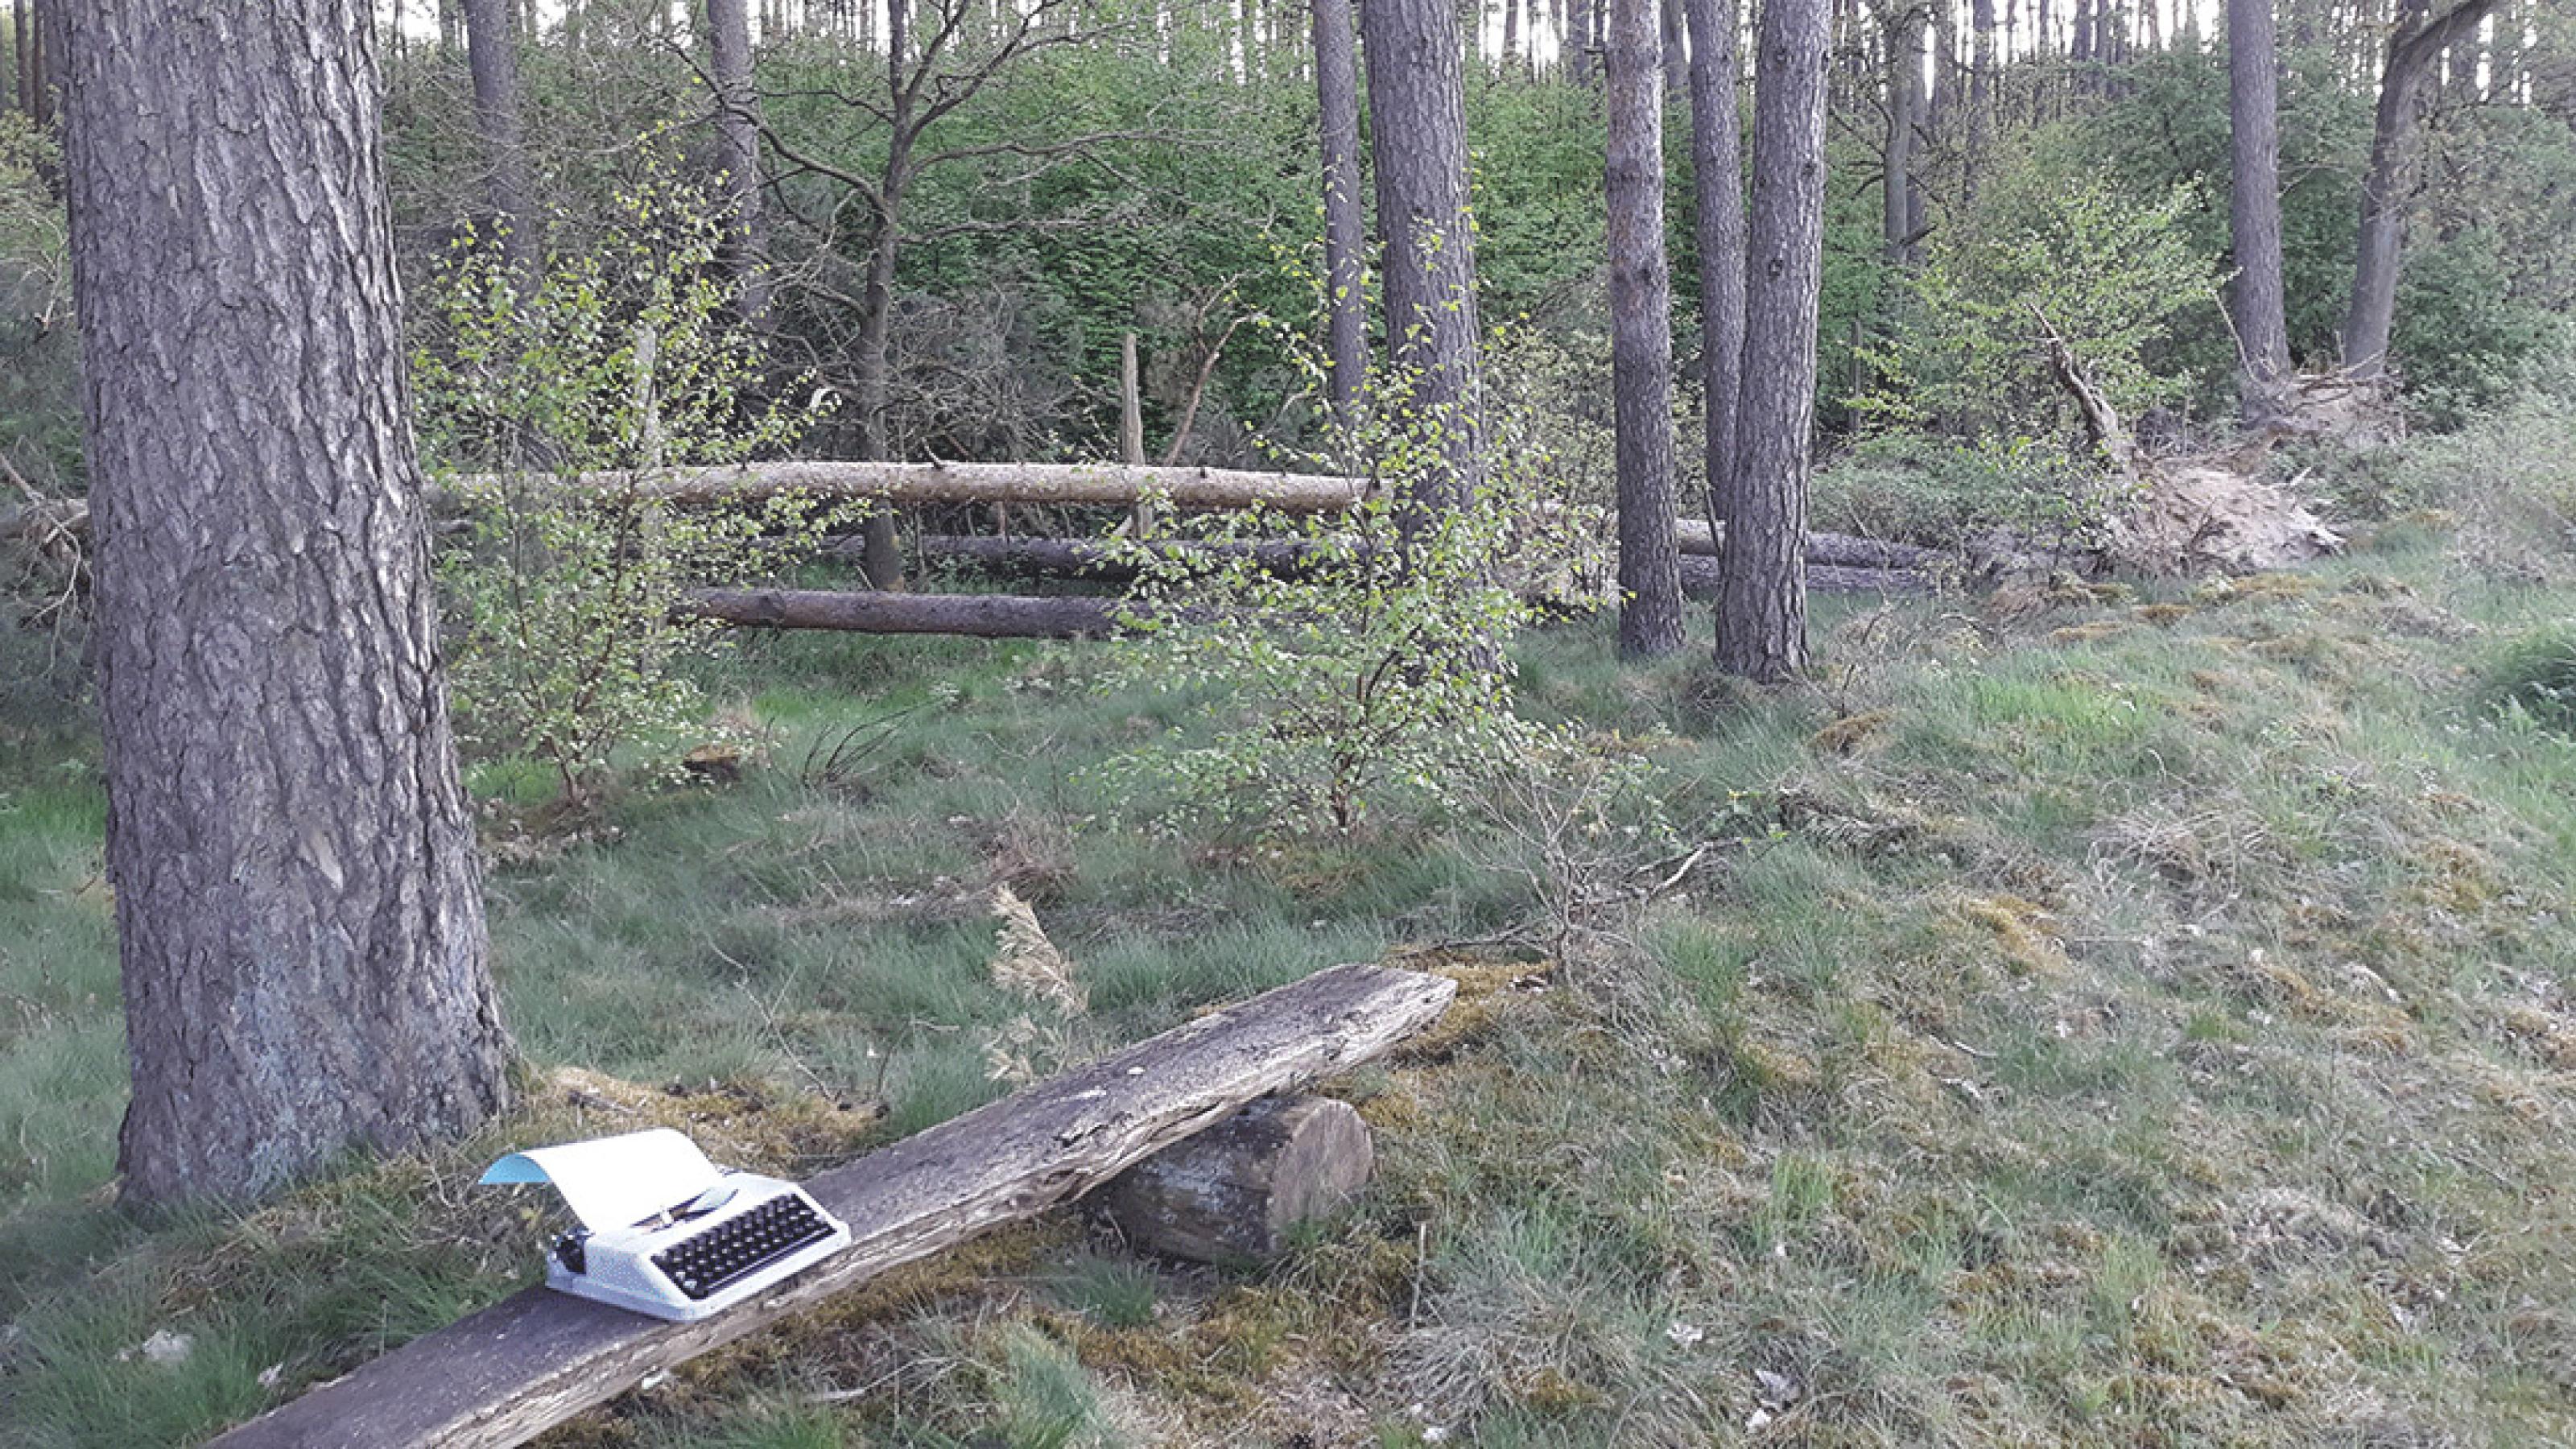 Links unten im Bild steht eine Schreibmaschine auf einer Holzbank in einem Mischwald. Es ist ein Blatt Papier eingezogen.